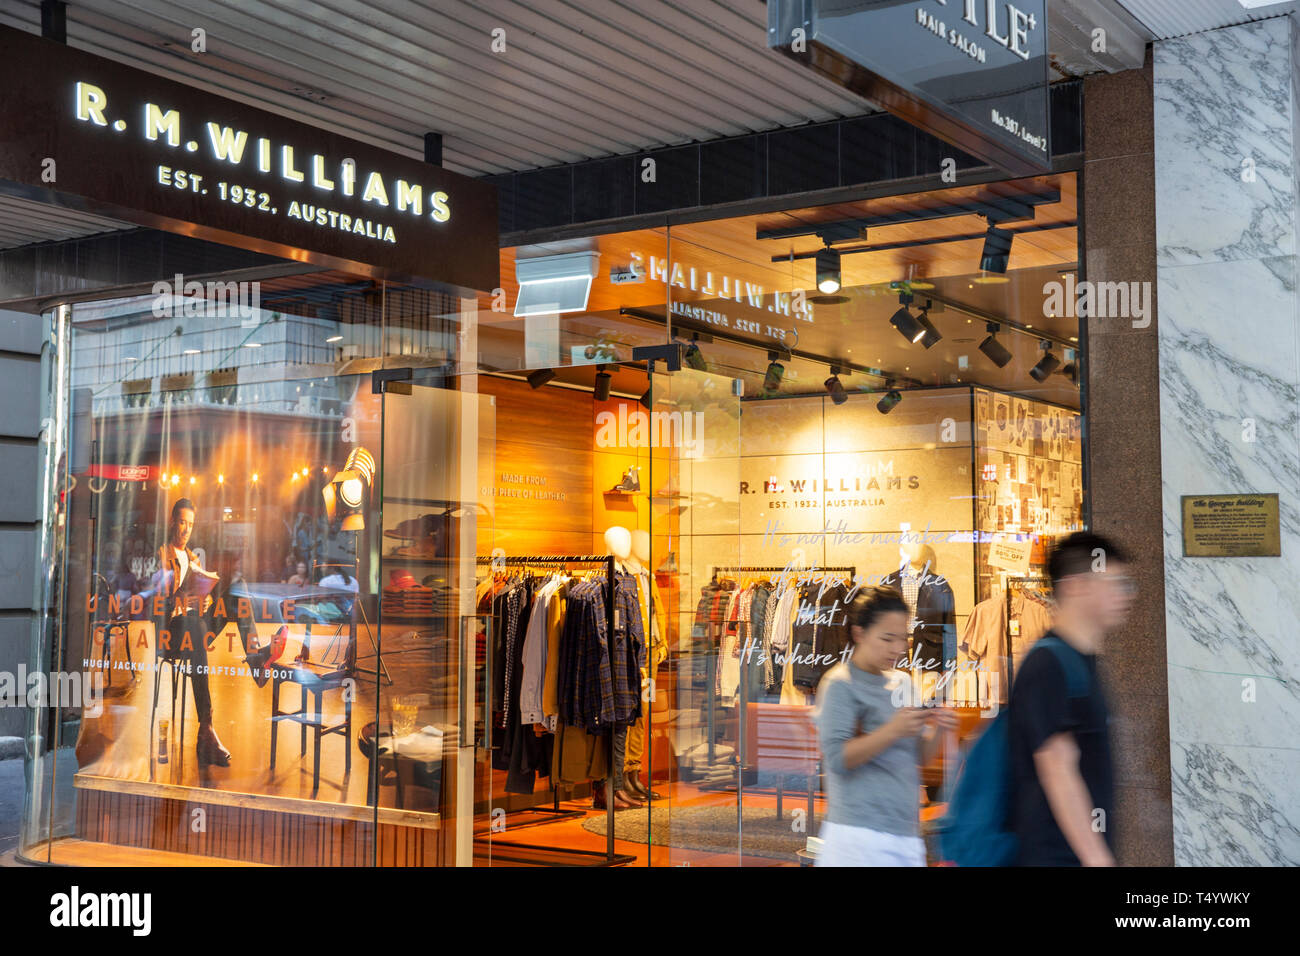 RM Williams Stiefel und Kleidung in Sydney, eine Ikone der australischen Marke vor allem für ihre Stiefel, Sydney, Australien Stockfoto